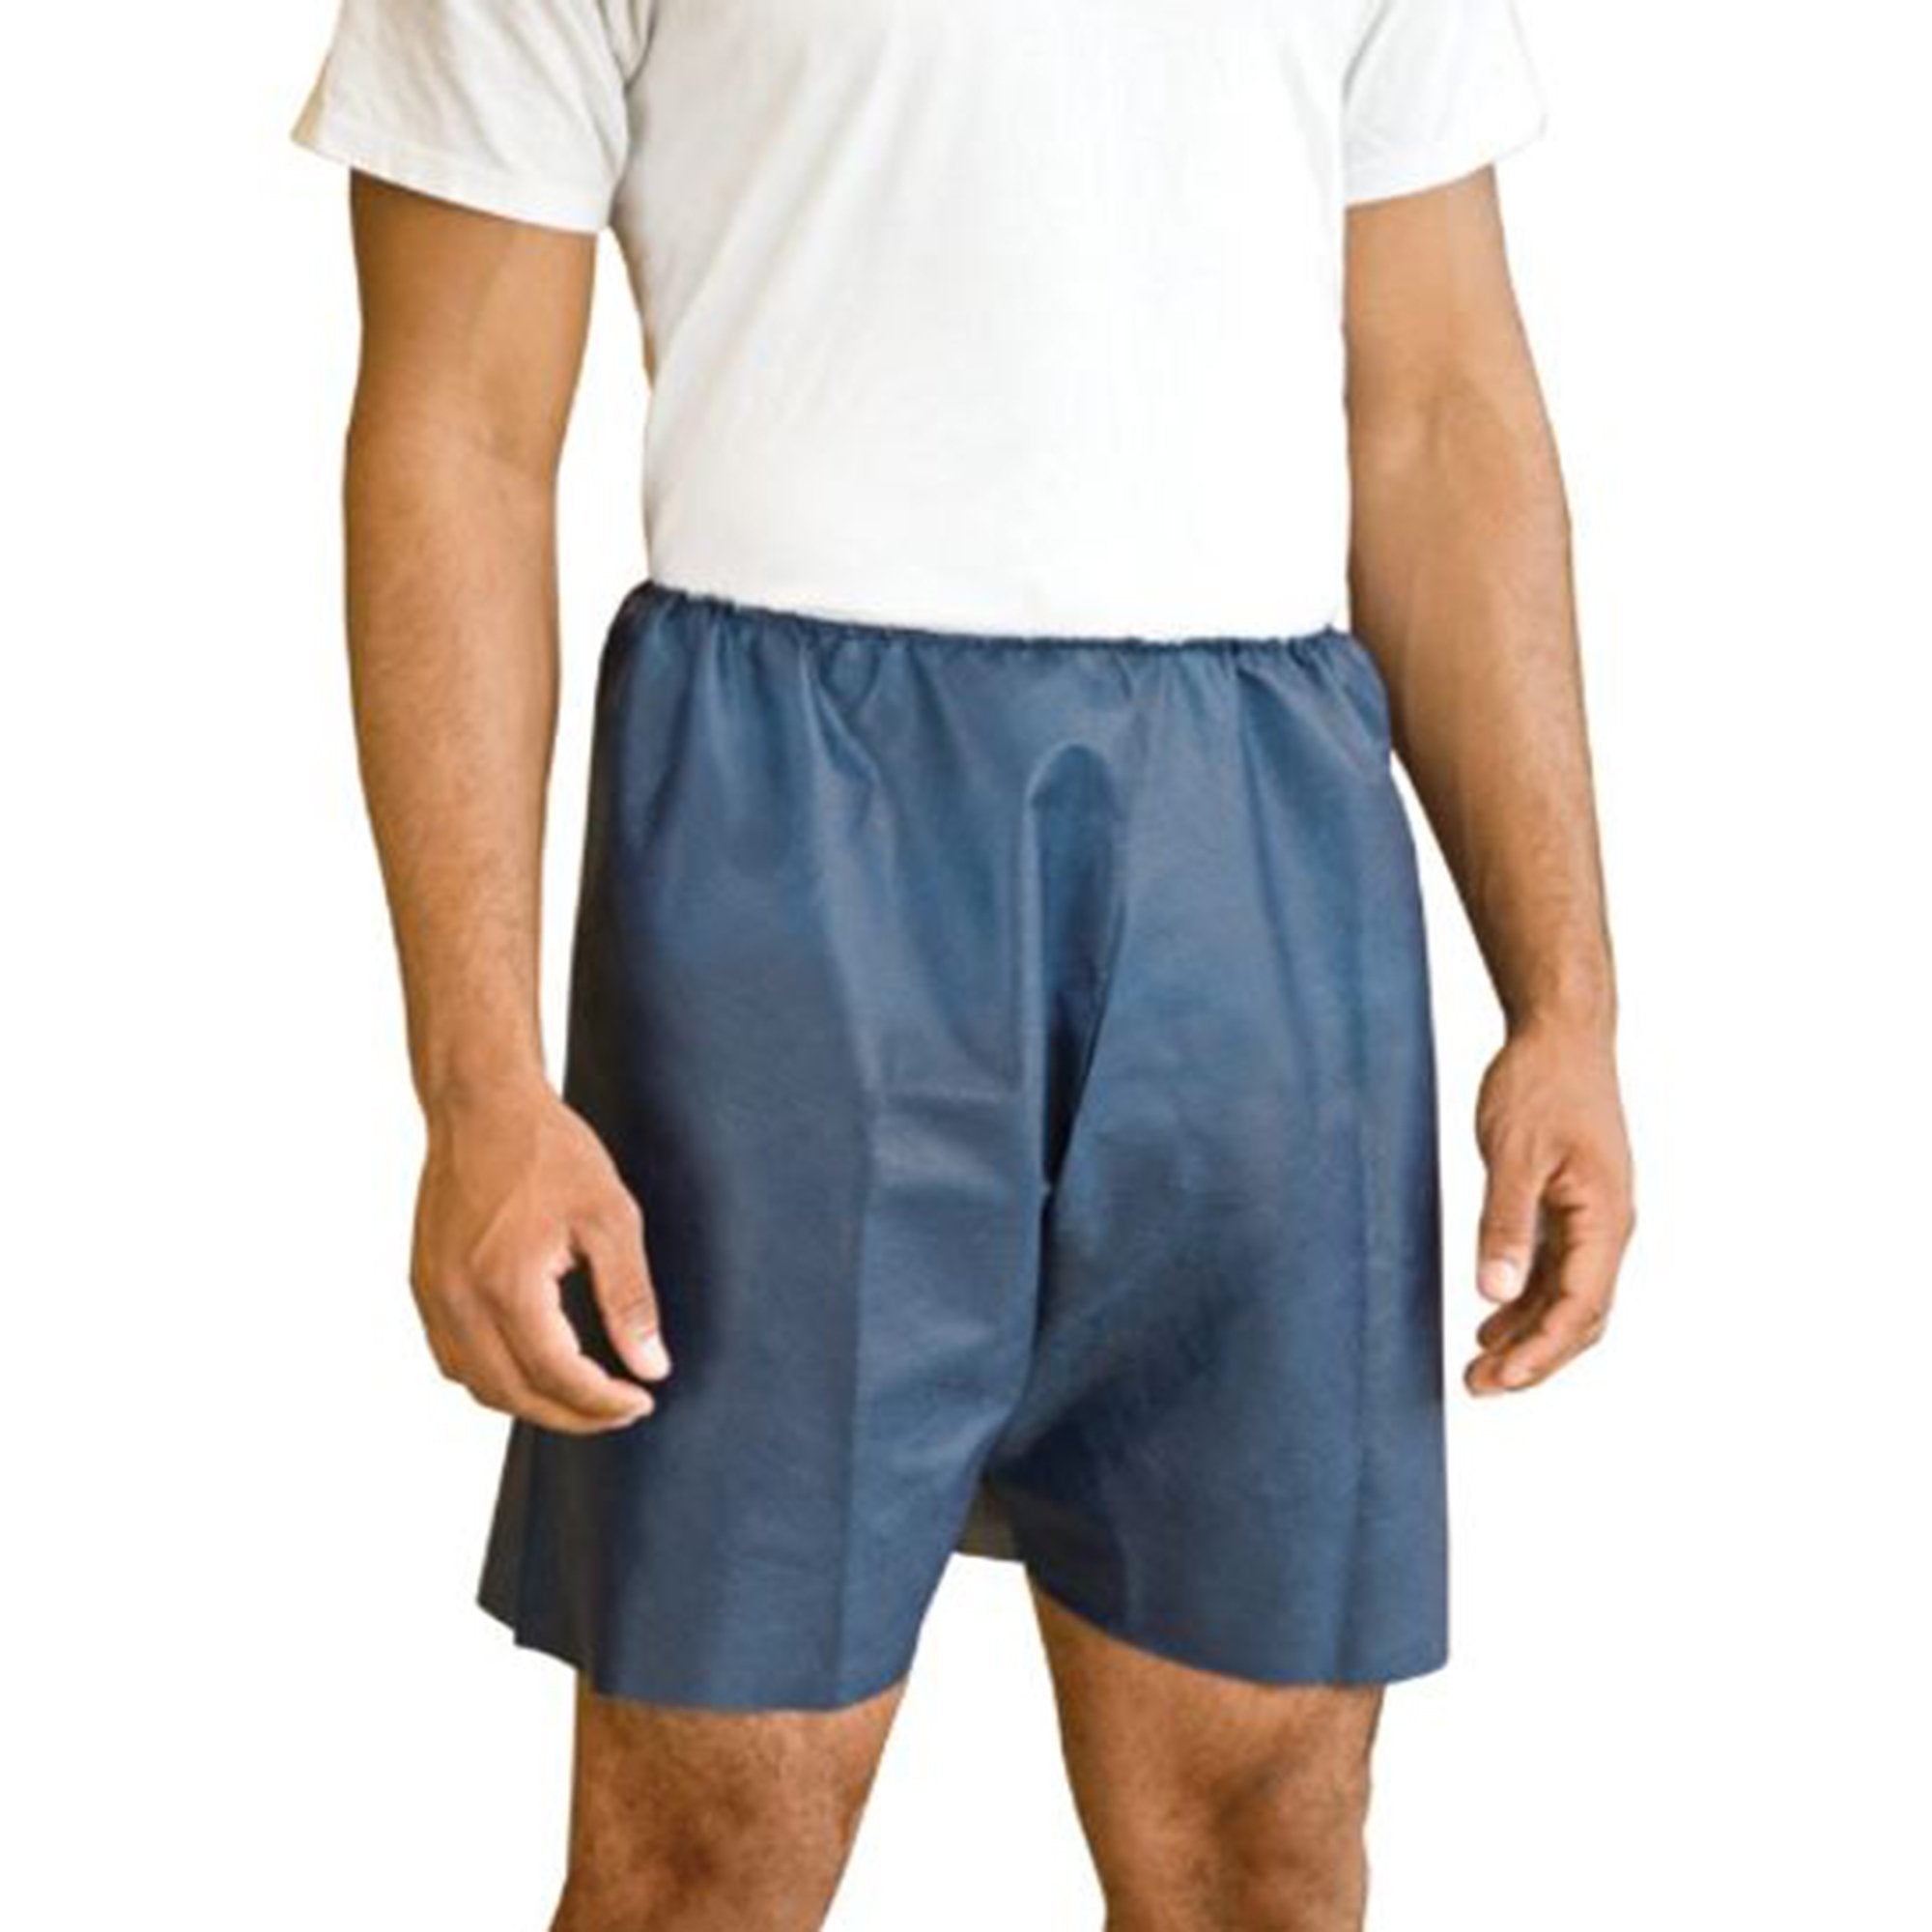 Exam Shorts MediShorts® Large / X-Large Navy Blue Nonwoven Adult Disposable